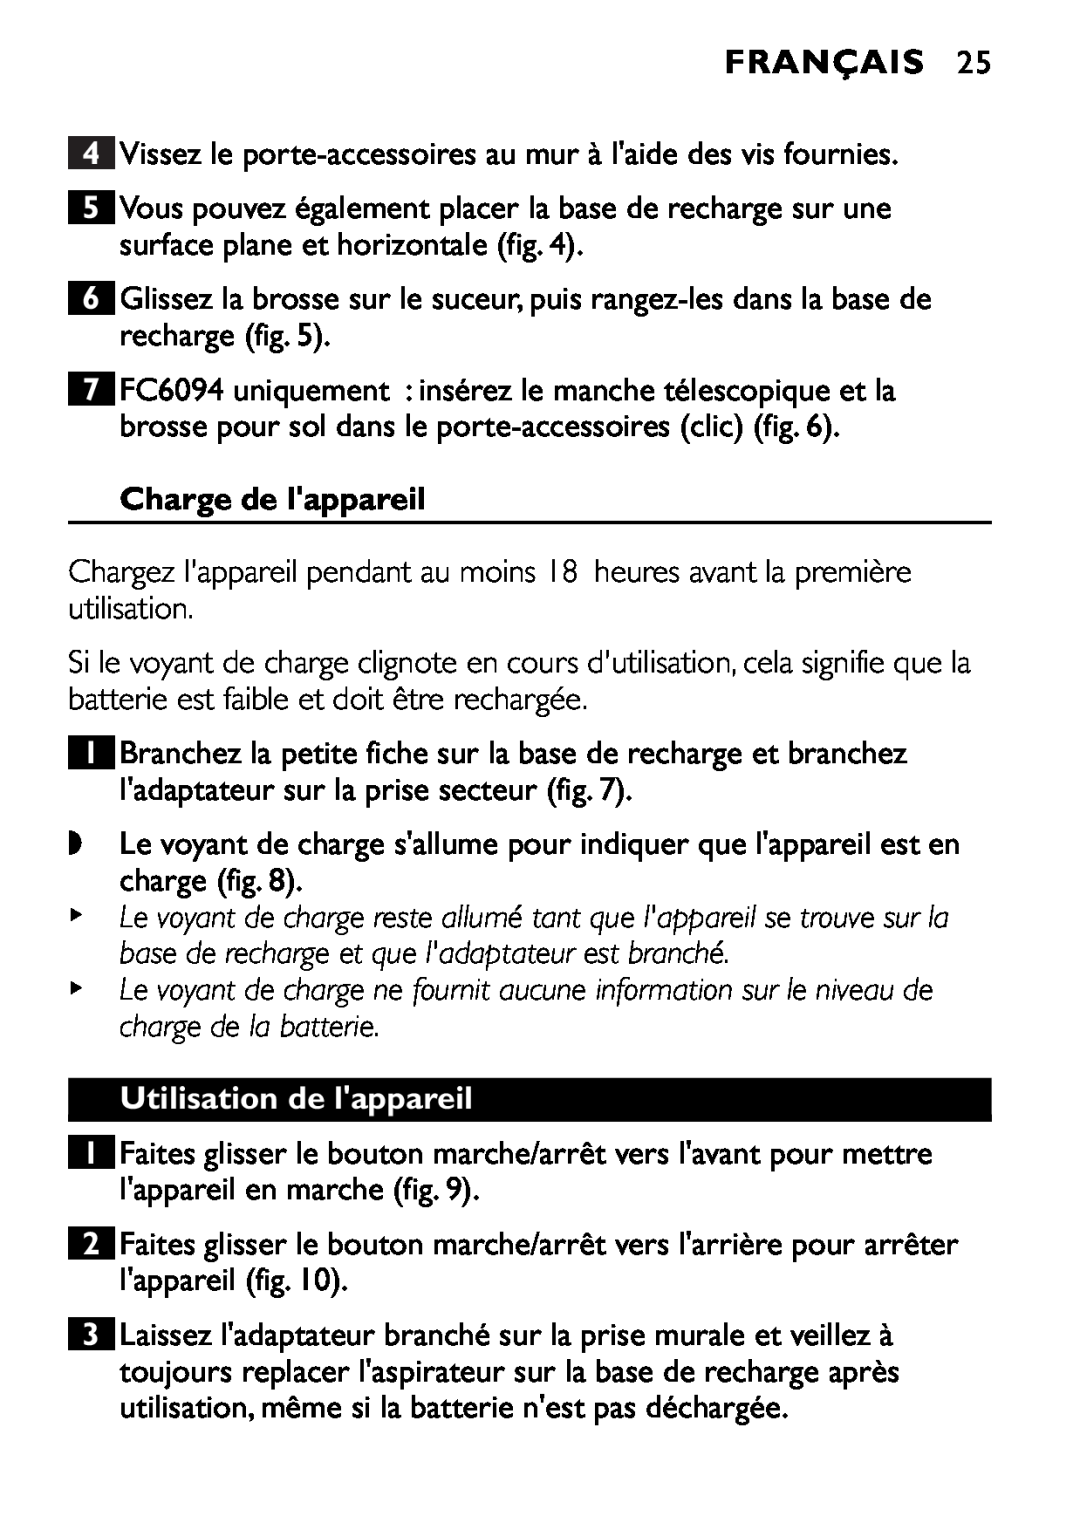 Philips FC6090, FC6092, FC6094 manual Français, Charge de lappareil, Utilisation de lappareil 